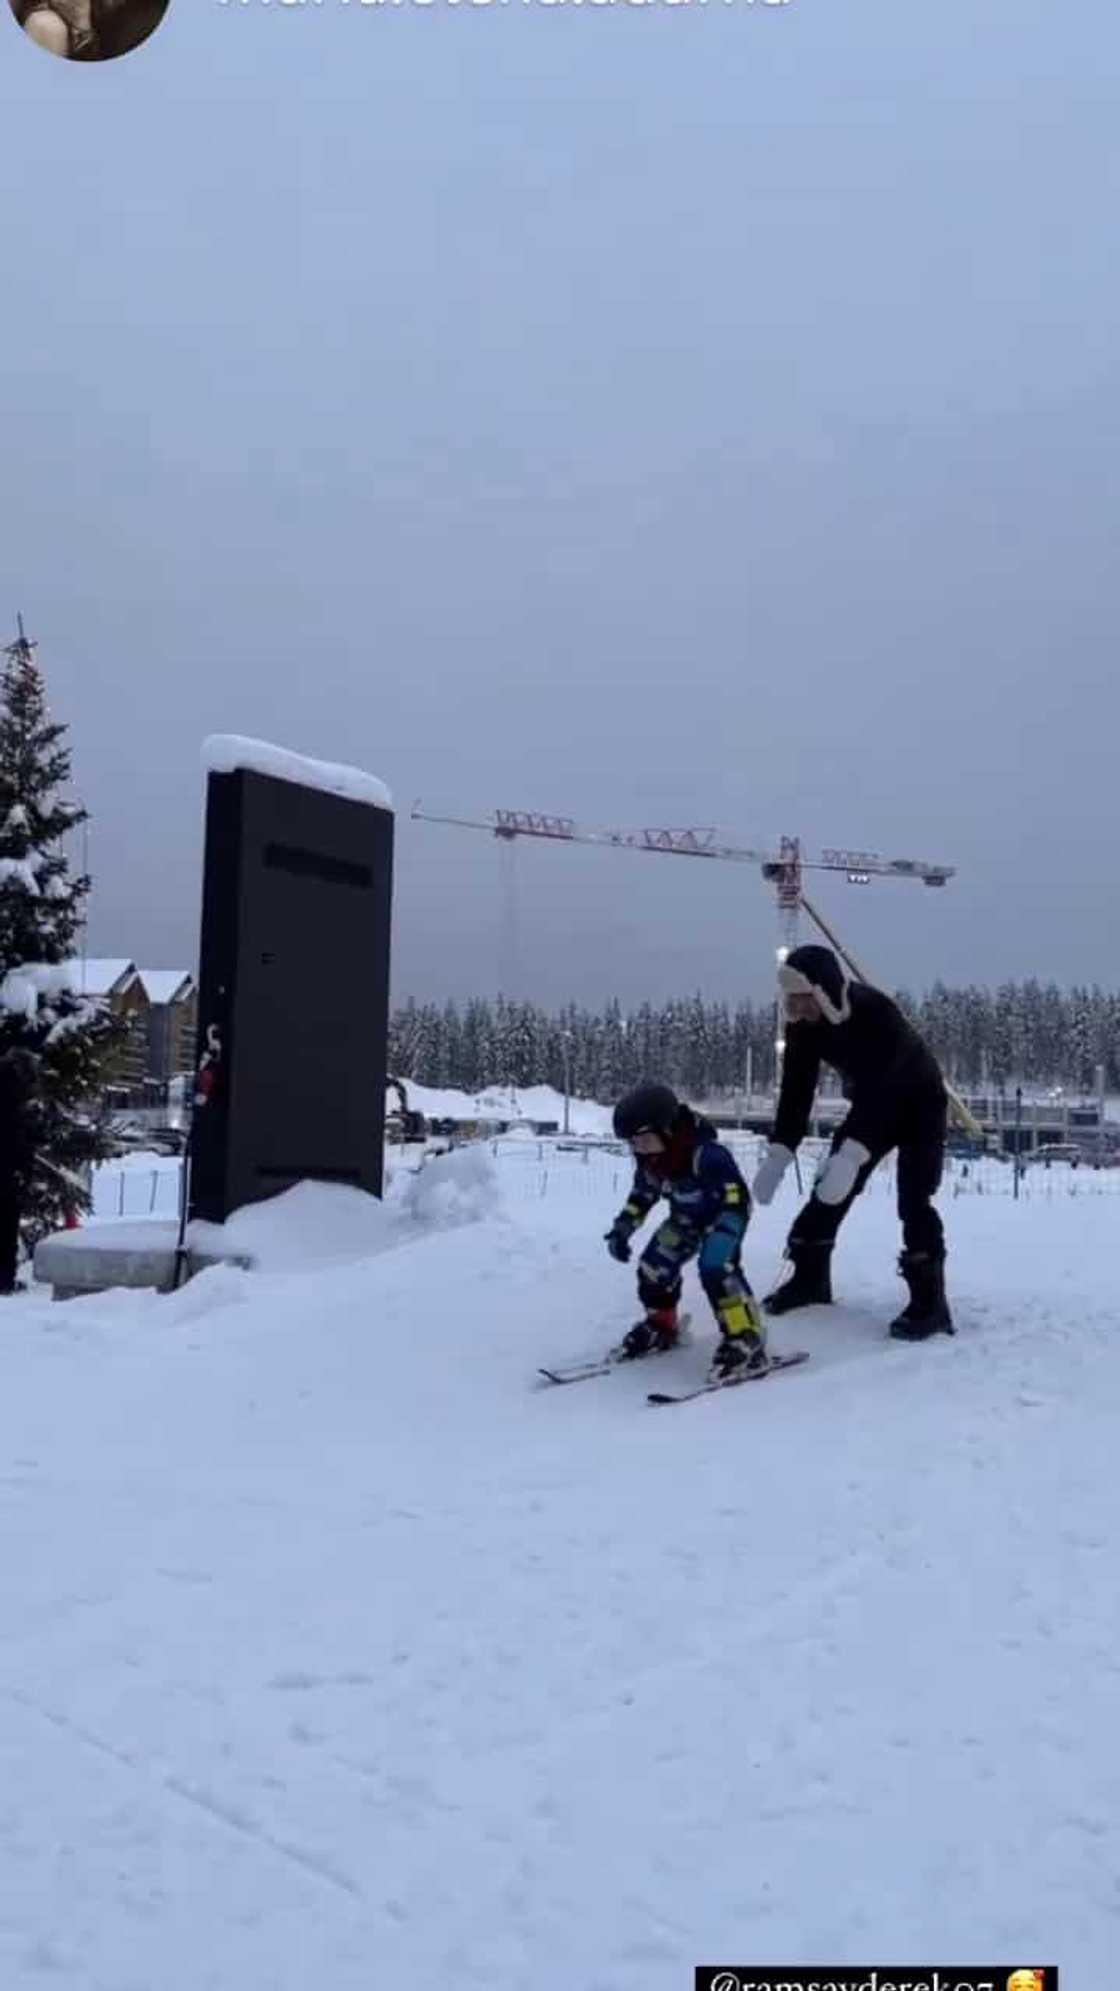 Video of Derek Ramsay patiently teaching Elias to ski goes viral: “Effort and patience”